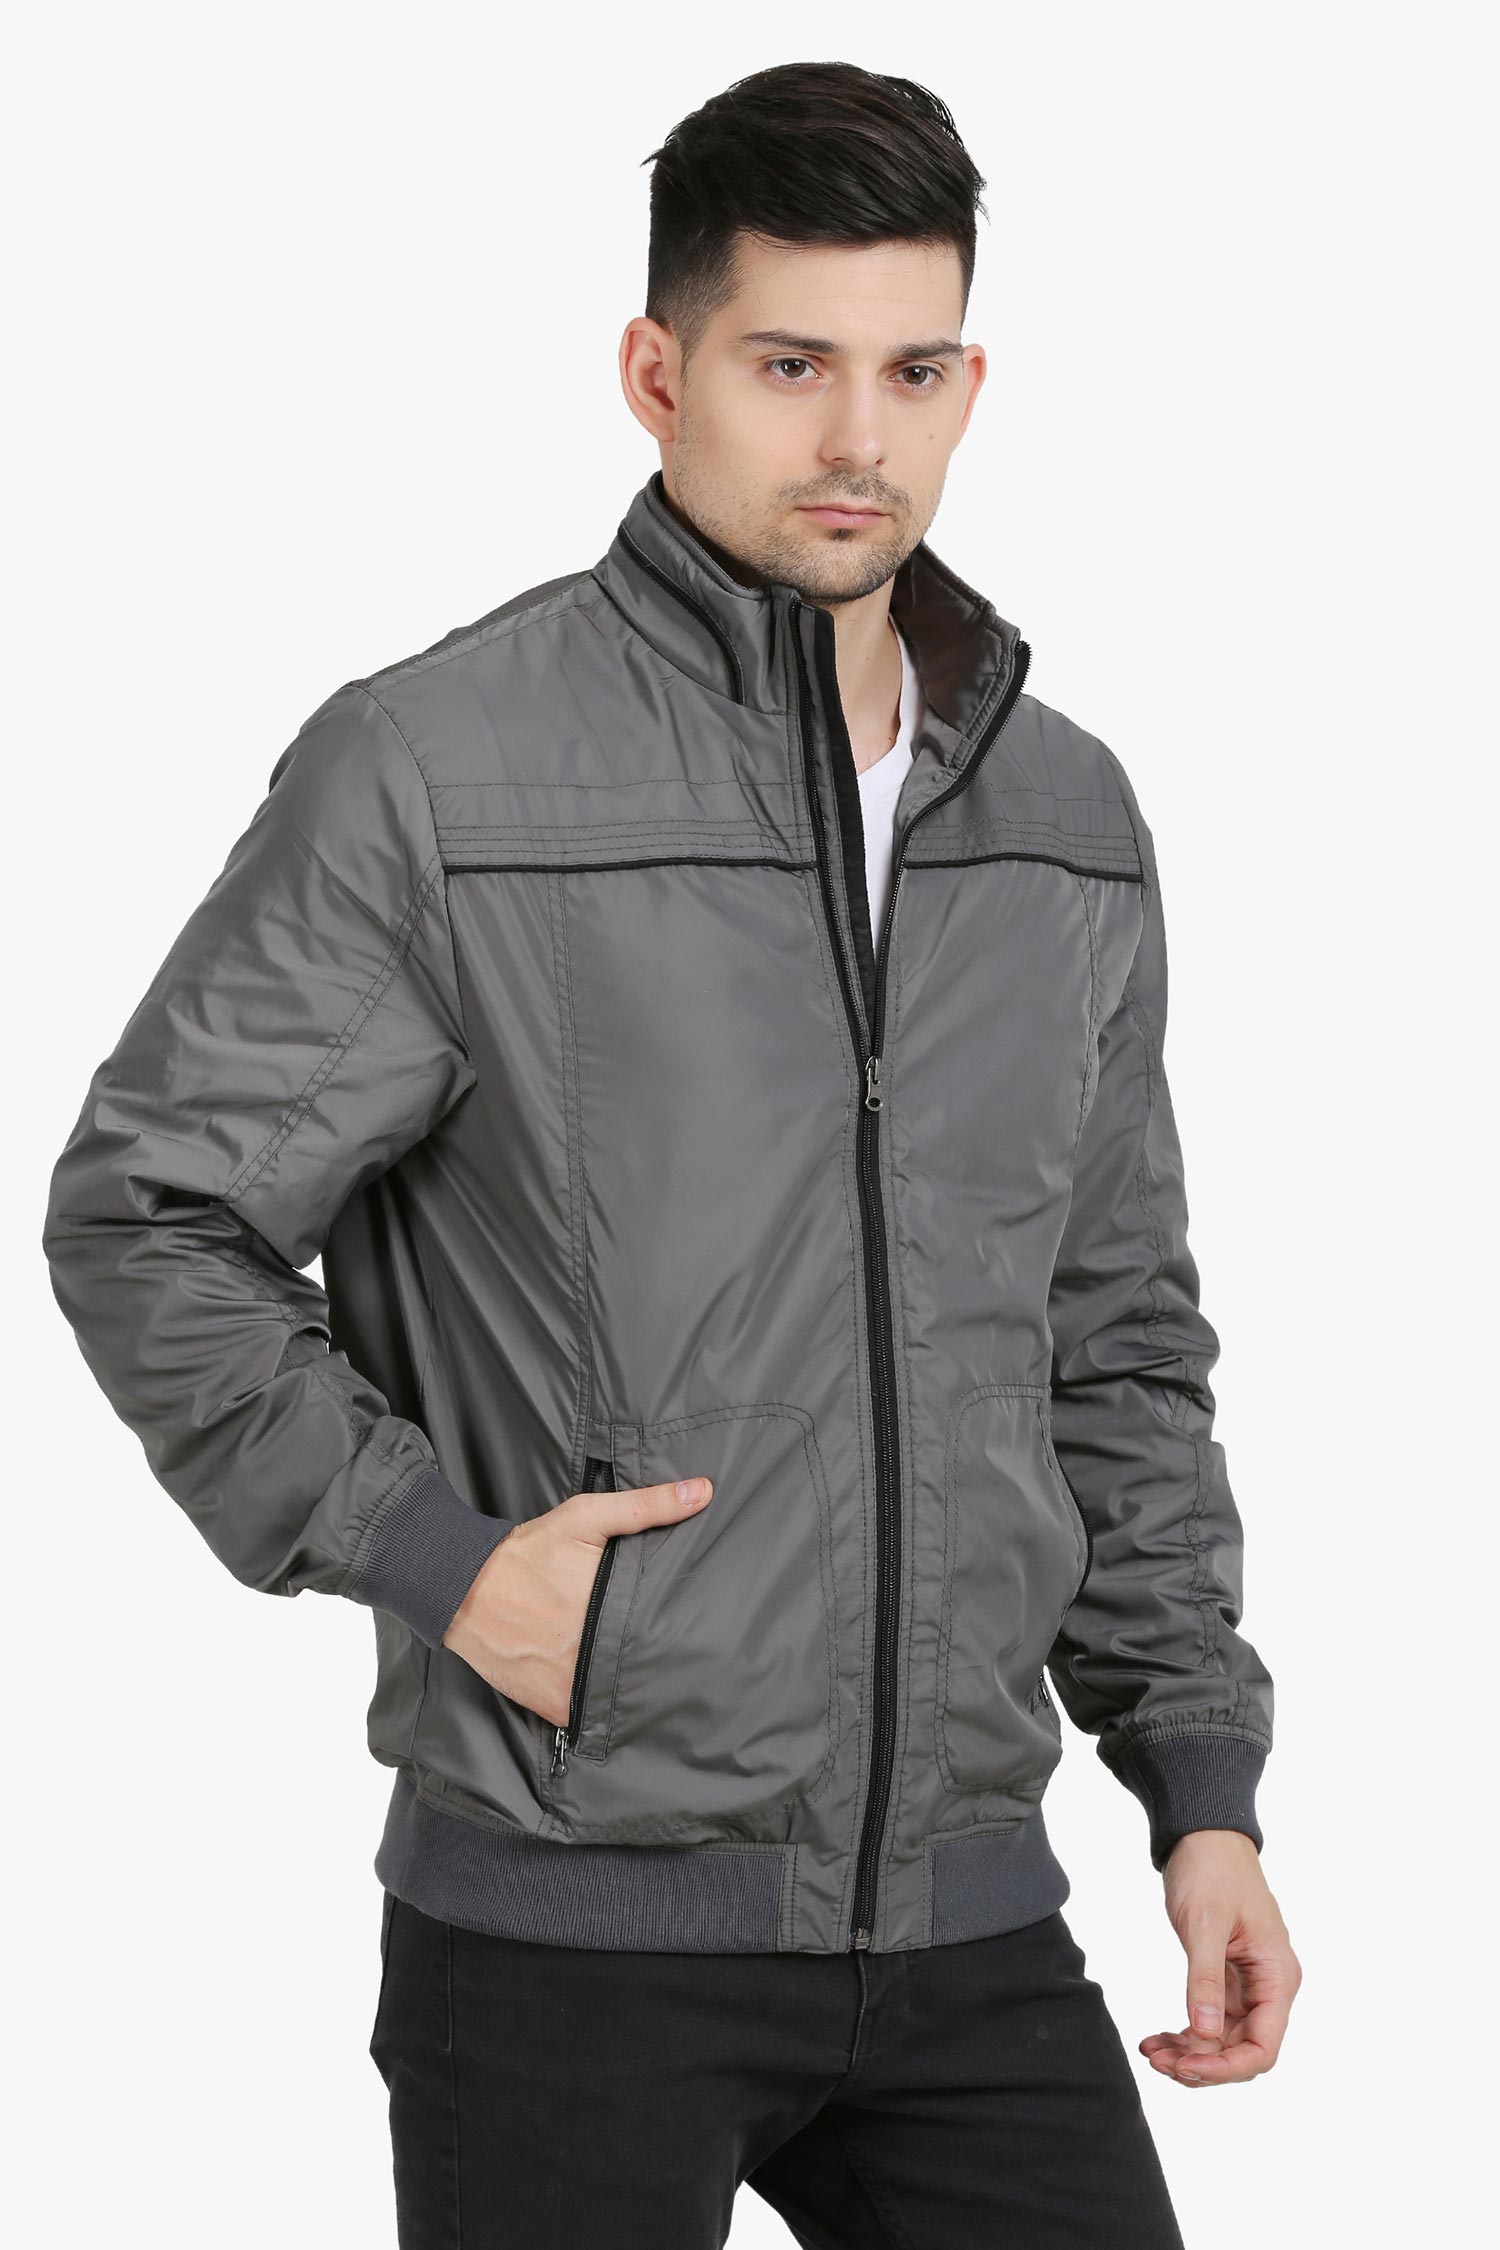 Men's jacket | AagainLifestyle